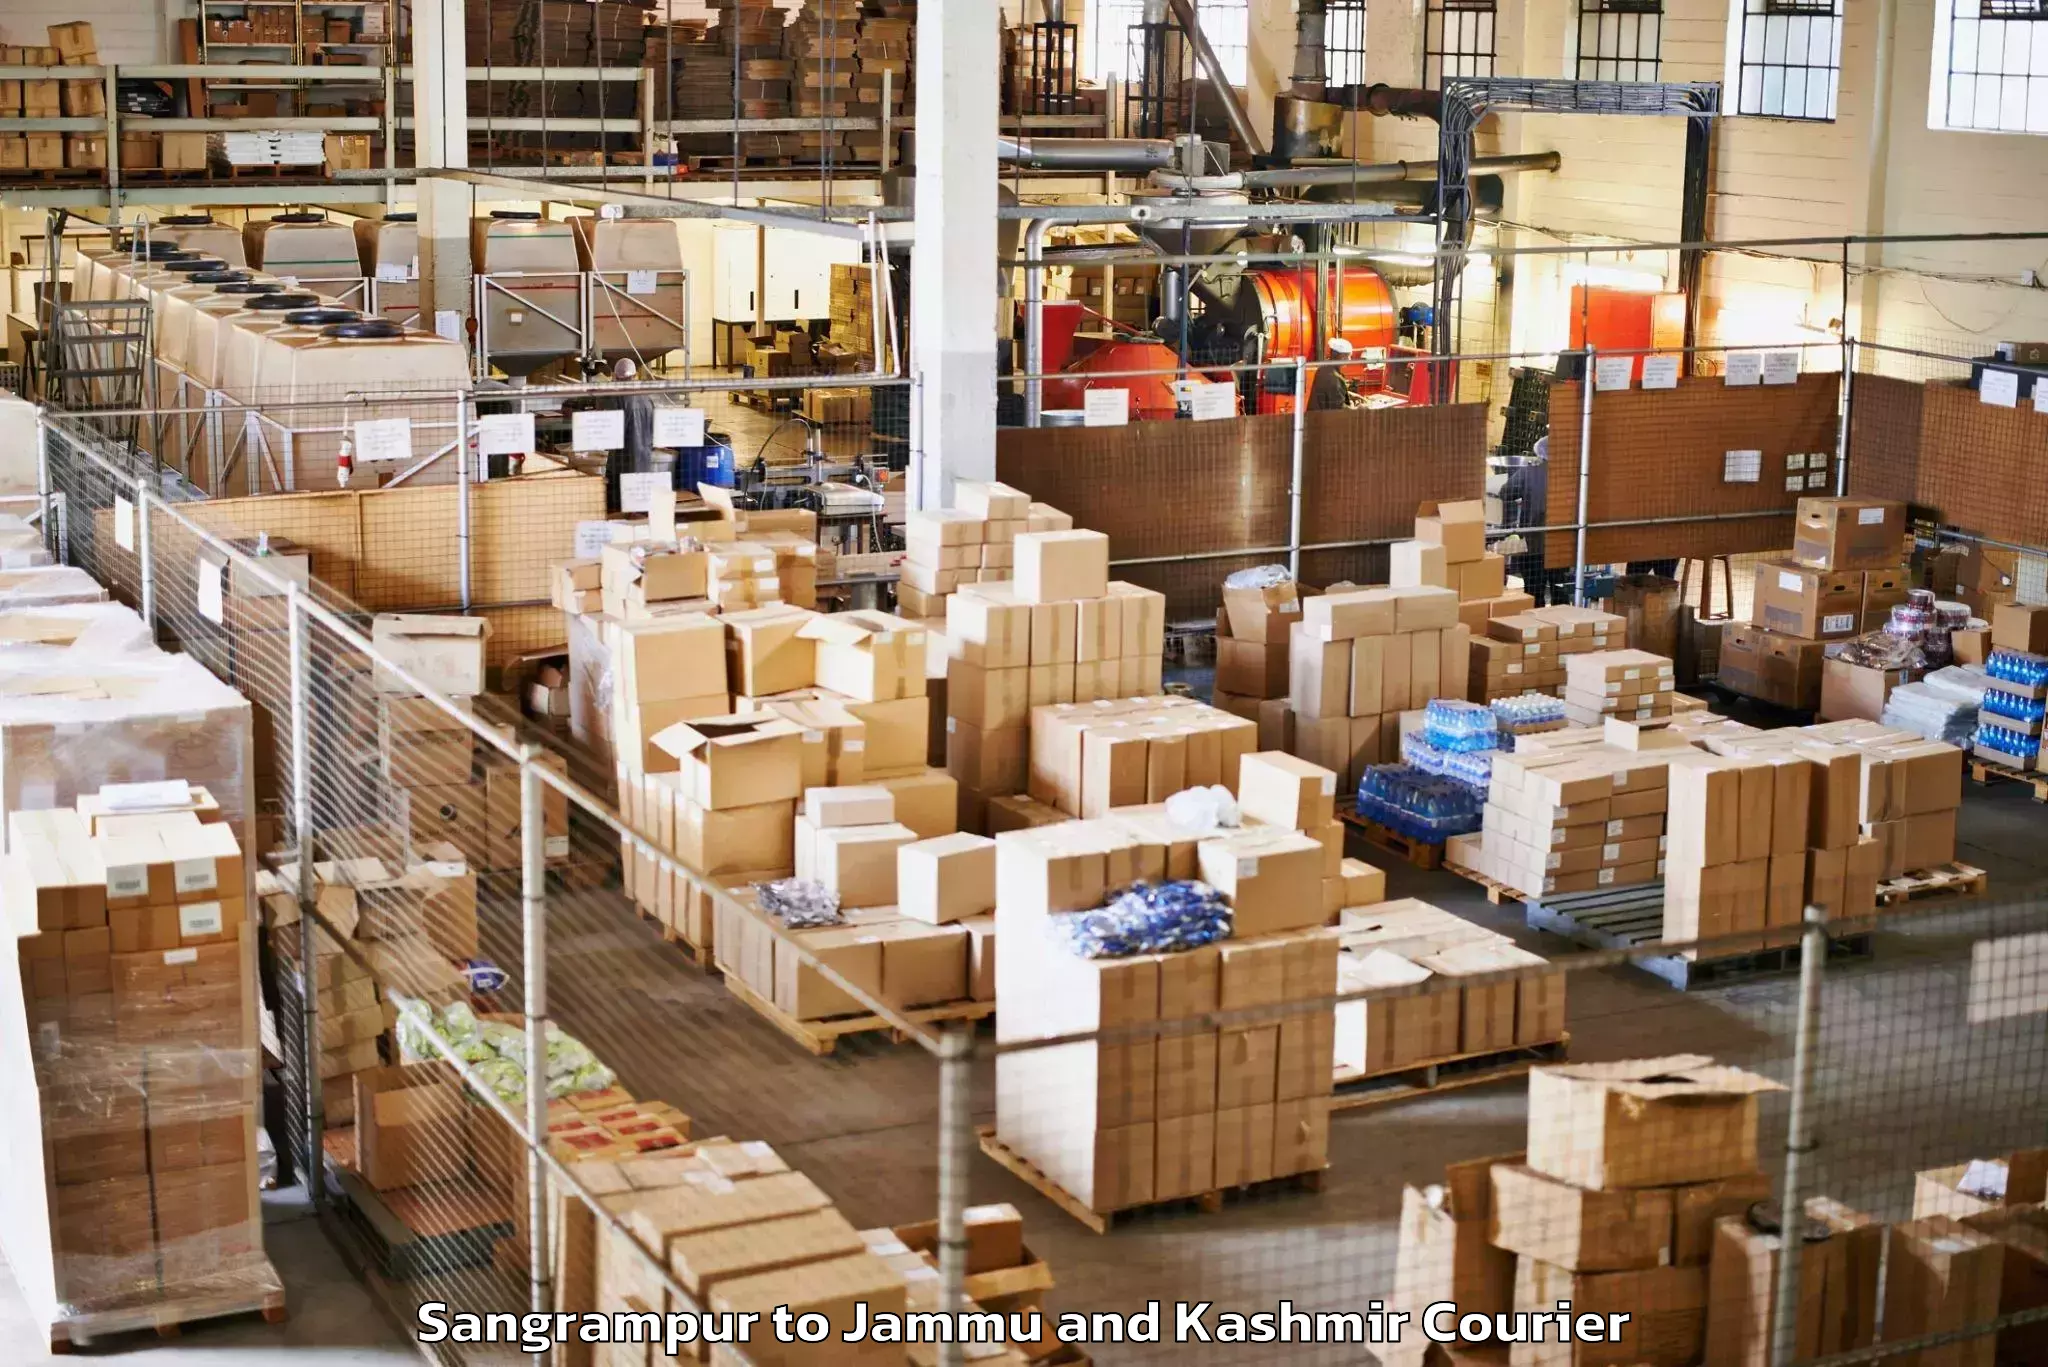 Baggage shipping experts Sangrampur to Jammu and Kashmir